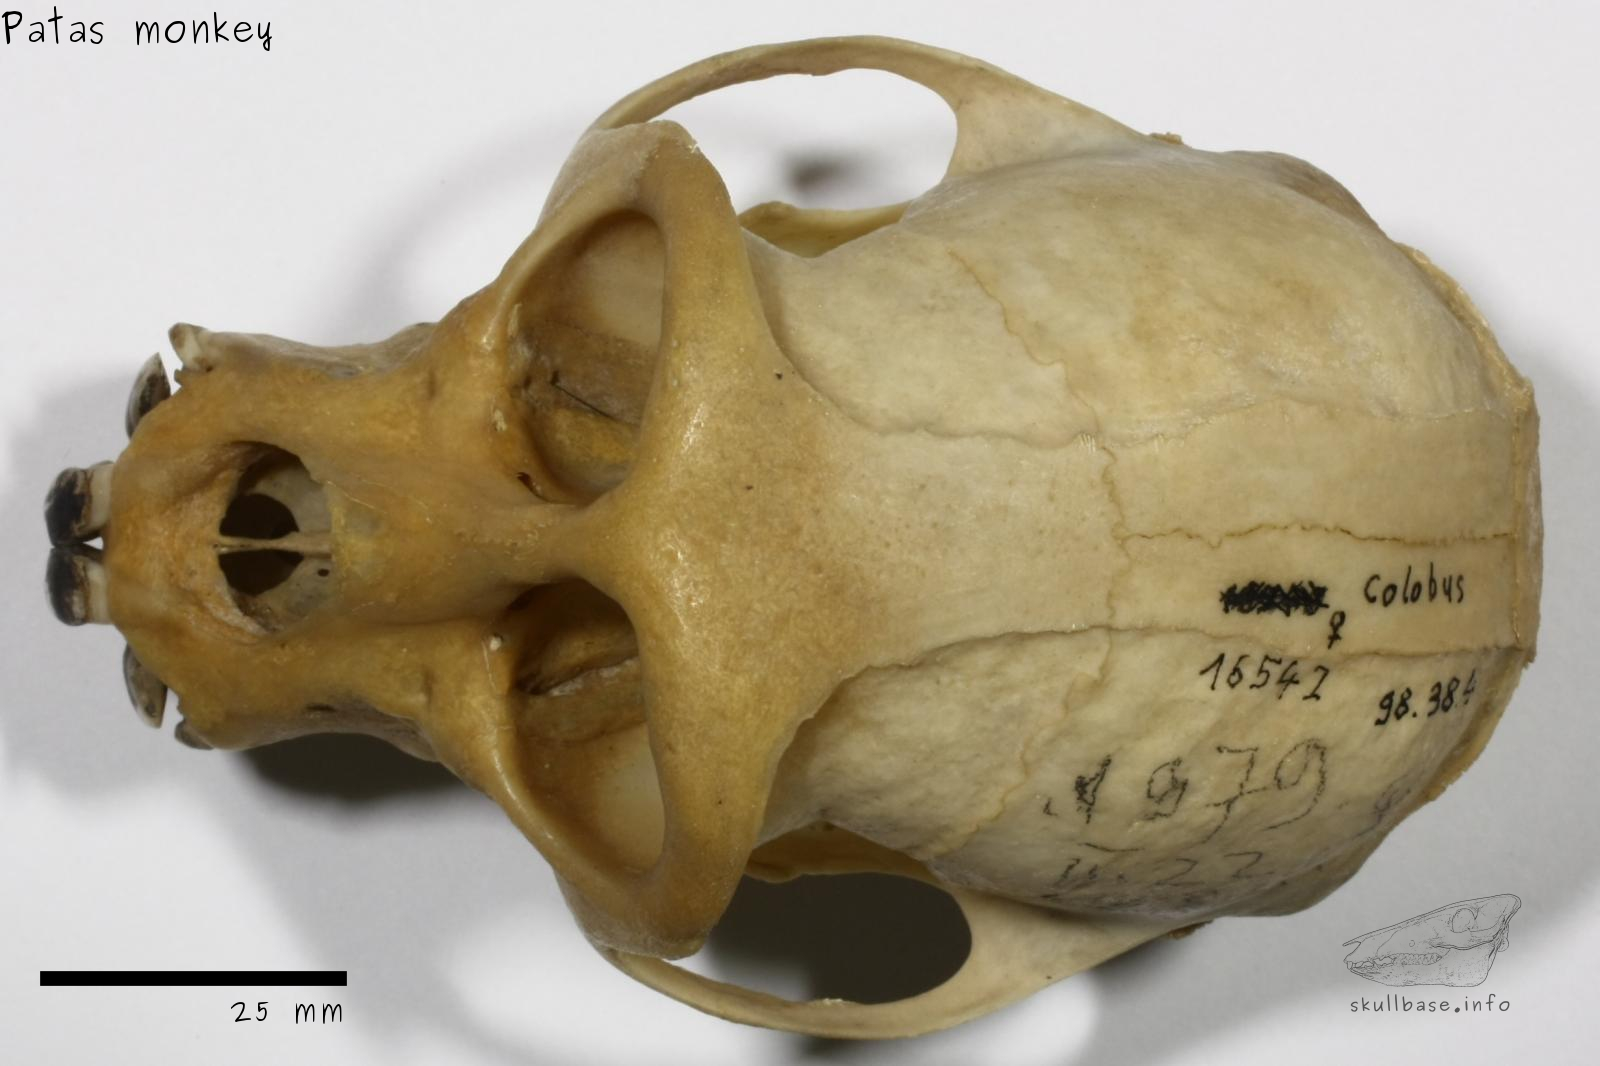 Patas monkey (Erythrocebus patas) skull dorsal view